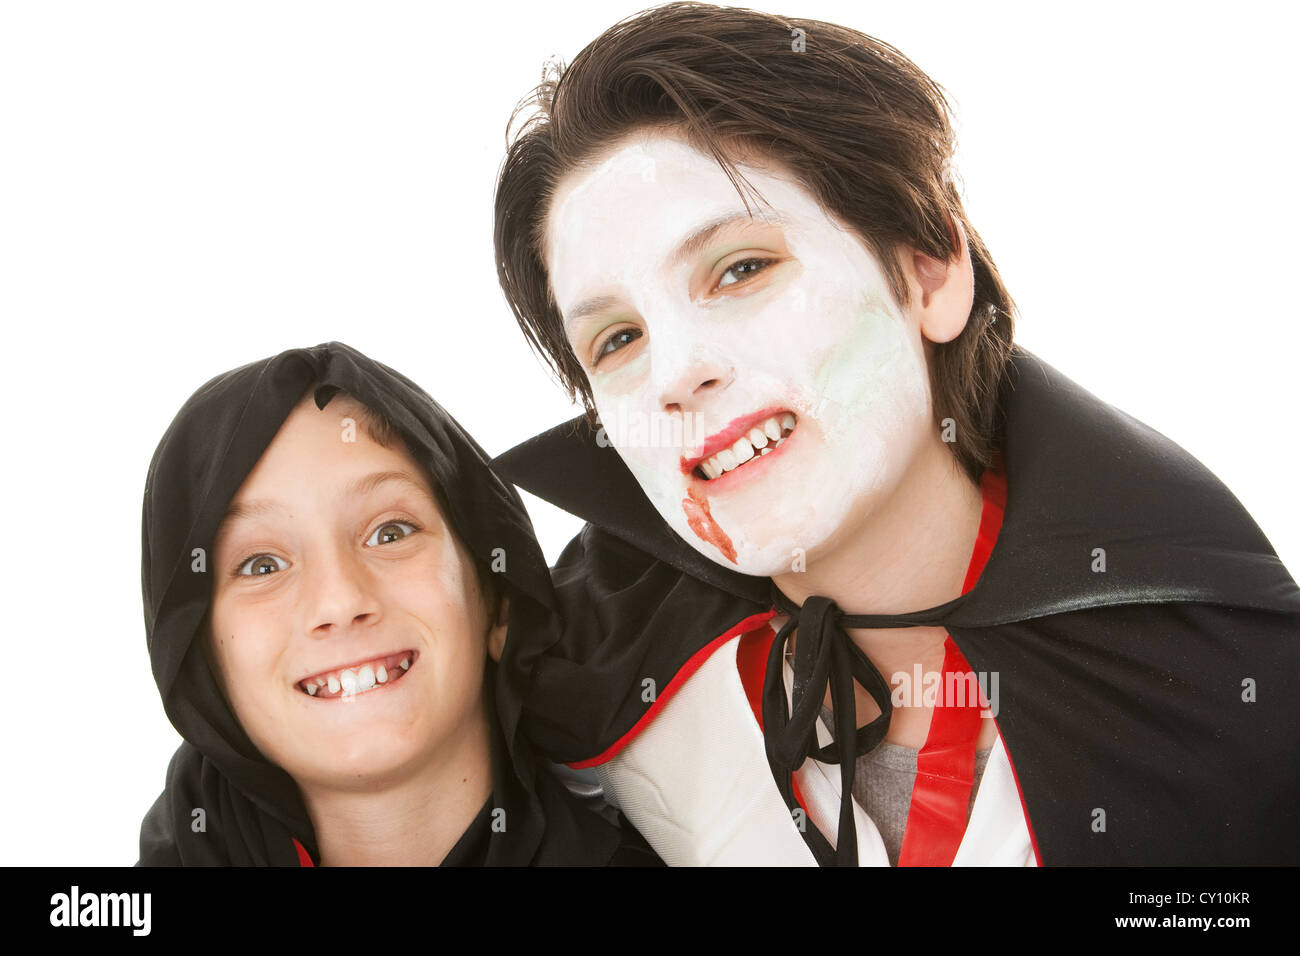 Zwei Brüder in ihrer Halloween-Kostüme gekleidet. Man ist ein Kobold und  der andere ist ein Vampir. Weißen Hintergrund Stockfotografie - Alamy